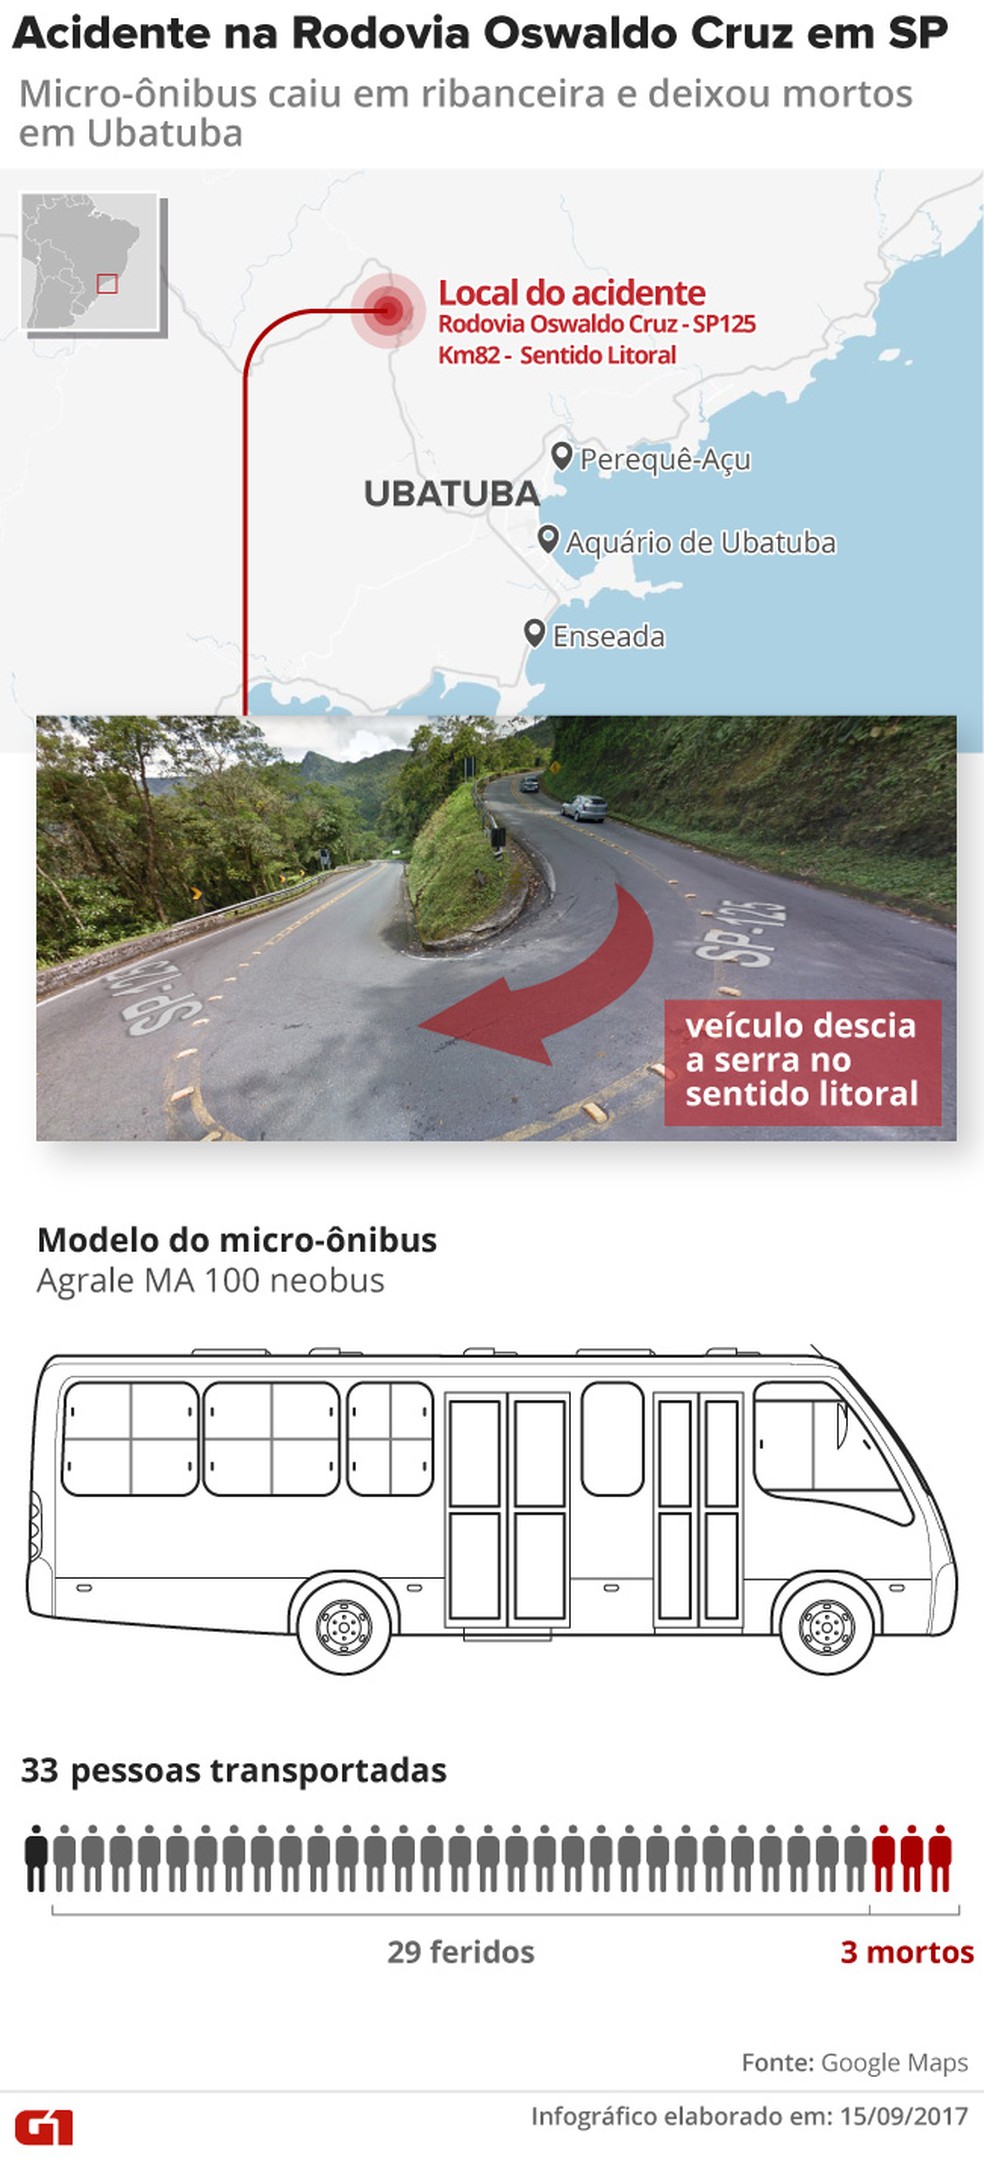 Micro-ônibus cai em ribanceira e deixa mortos e feridos na serra da Rodovia Oswaldo Cruz em Ubatuba (Foto: Arte/ G1)